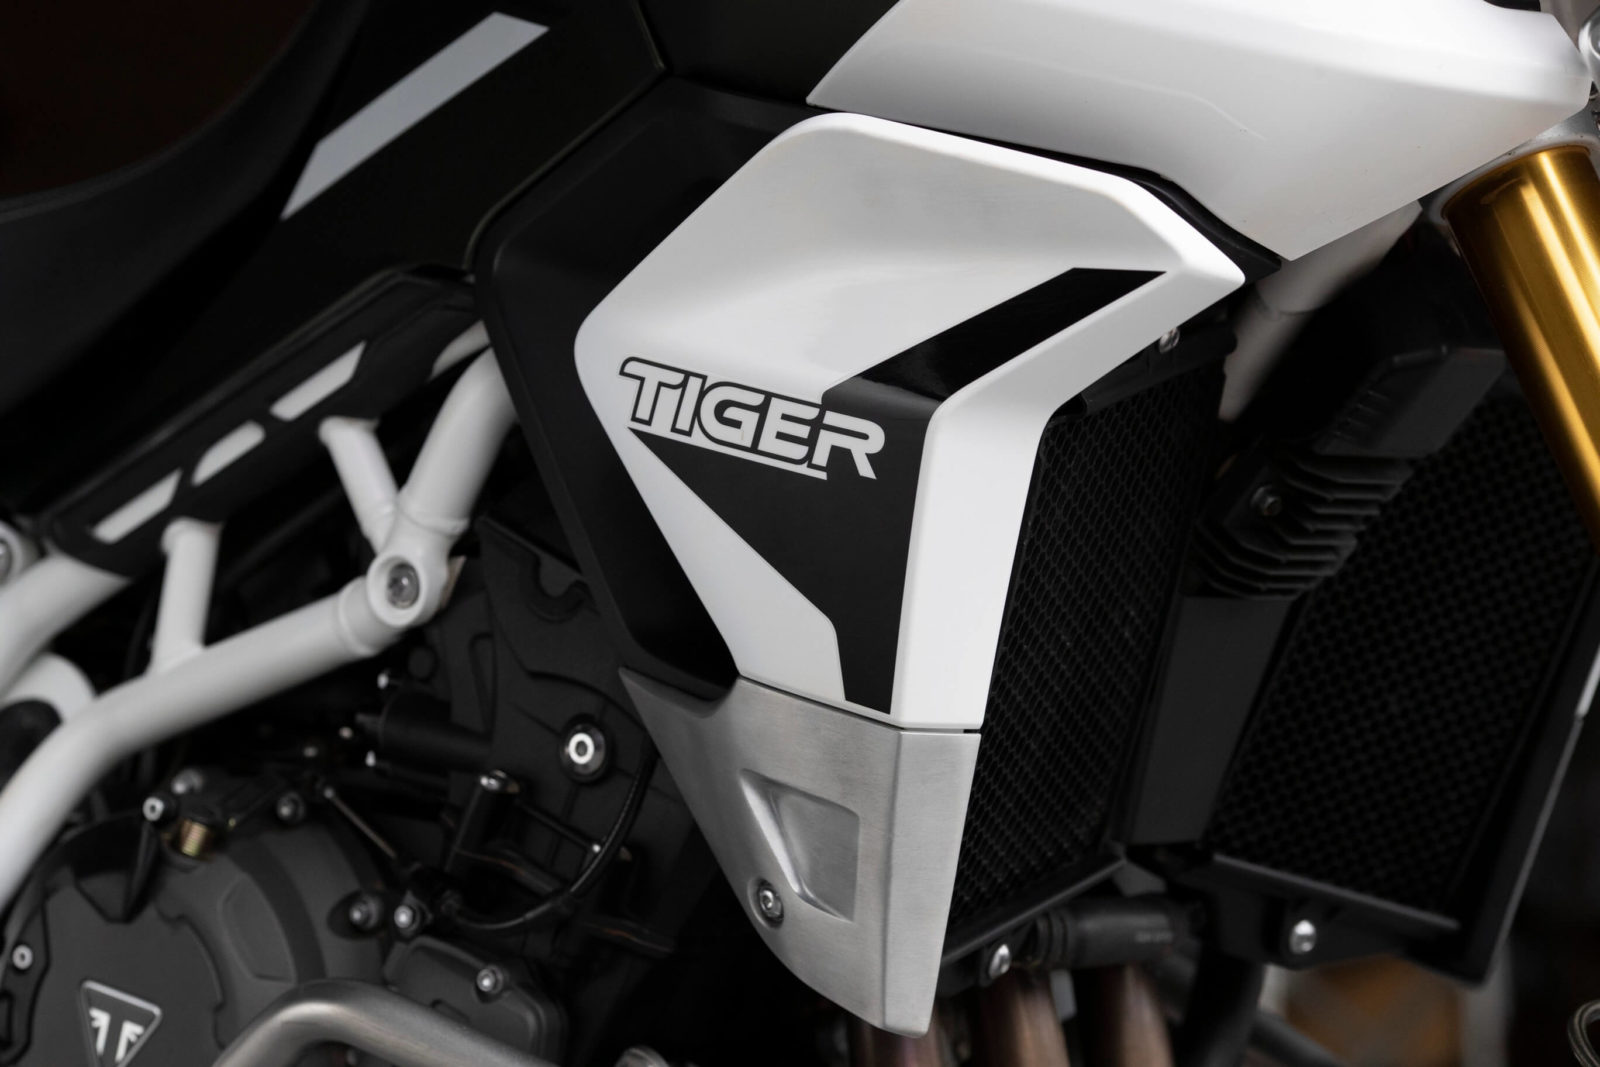 Triumph Tiger 900 2020 test avis Rally pro GT pro comparatif prix ride essai off-road route prix